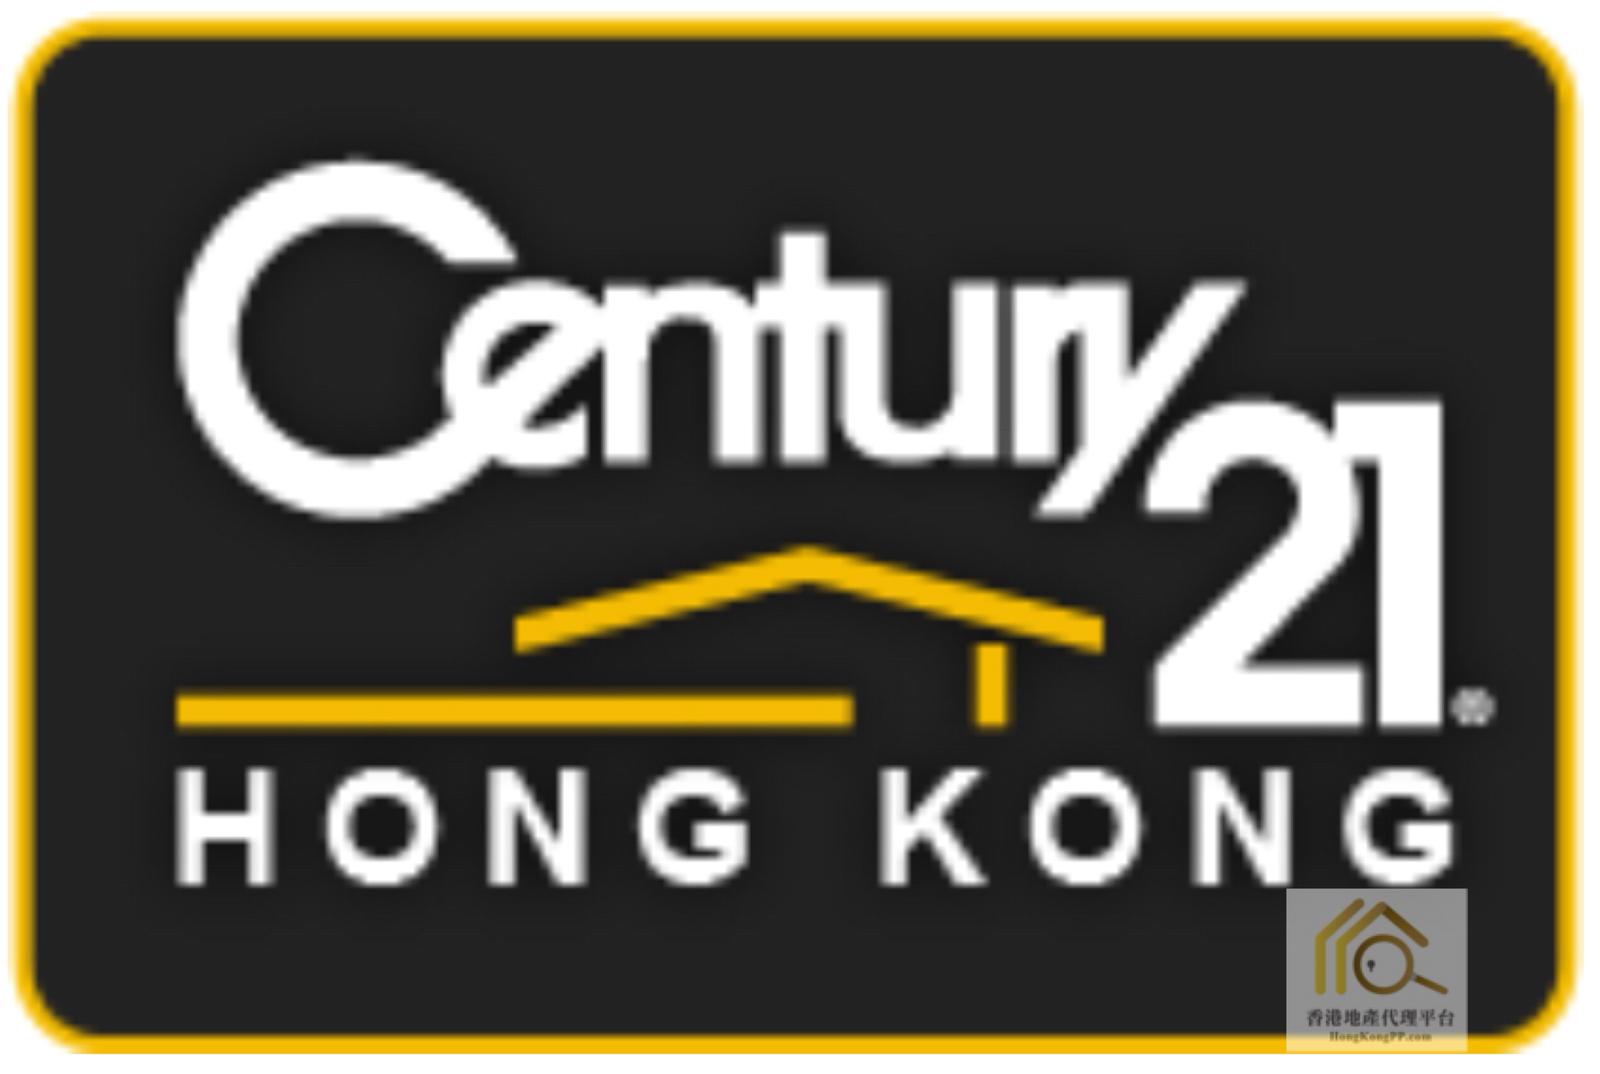 地產代理公司: 世紀21 世紀21中華物業有限公司 (佐敦分行II)